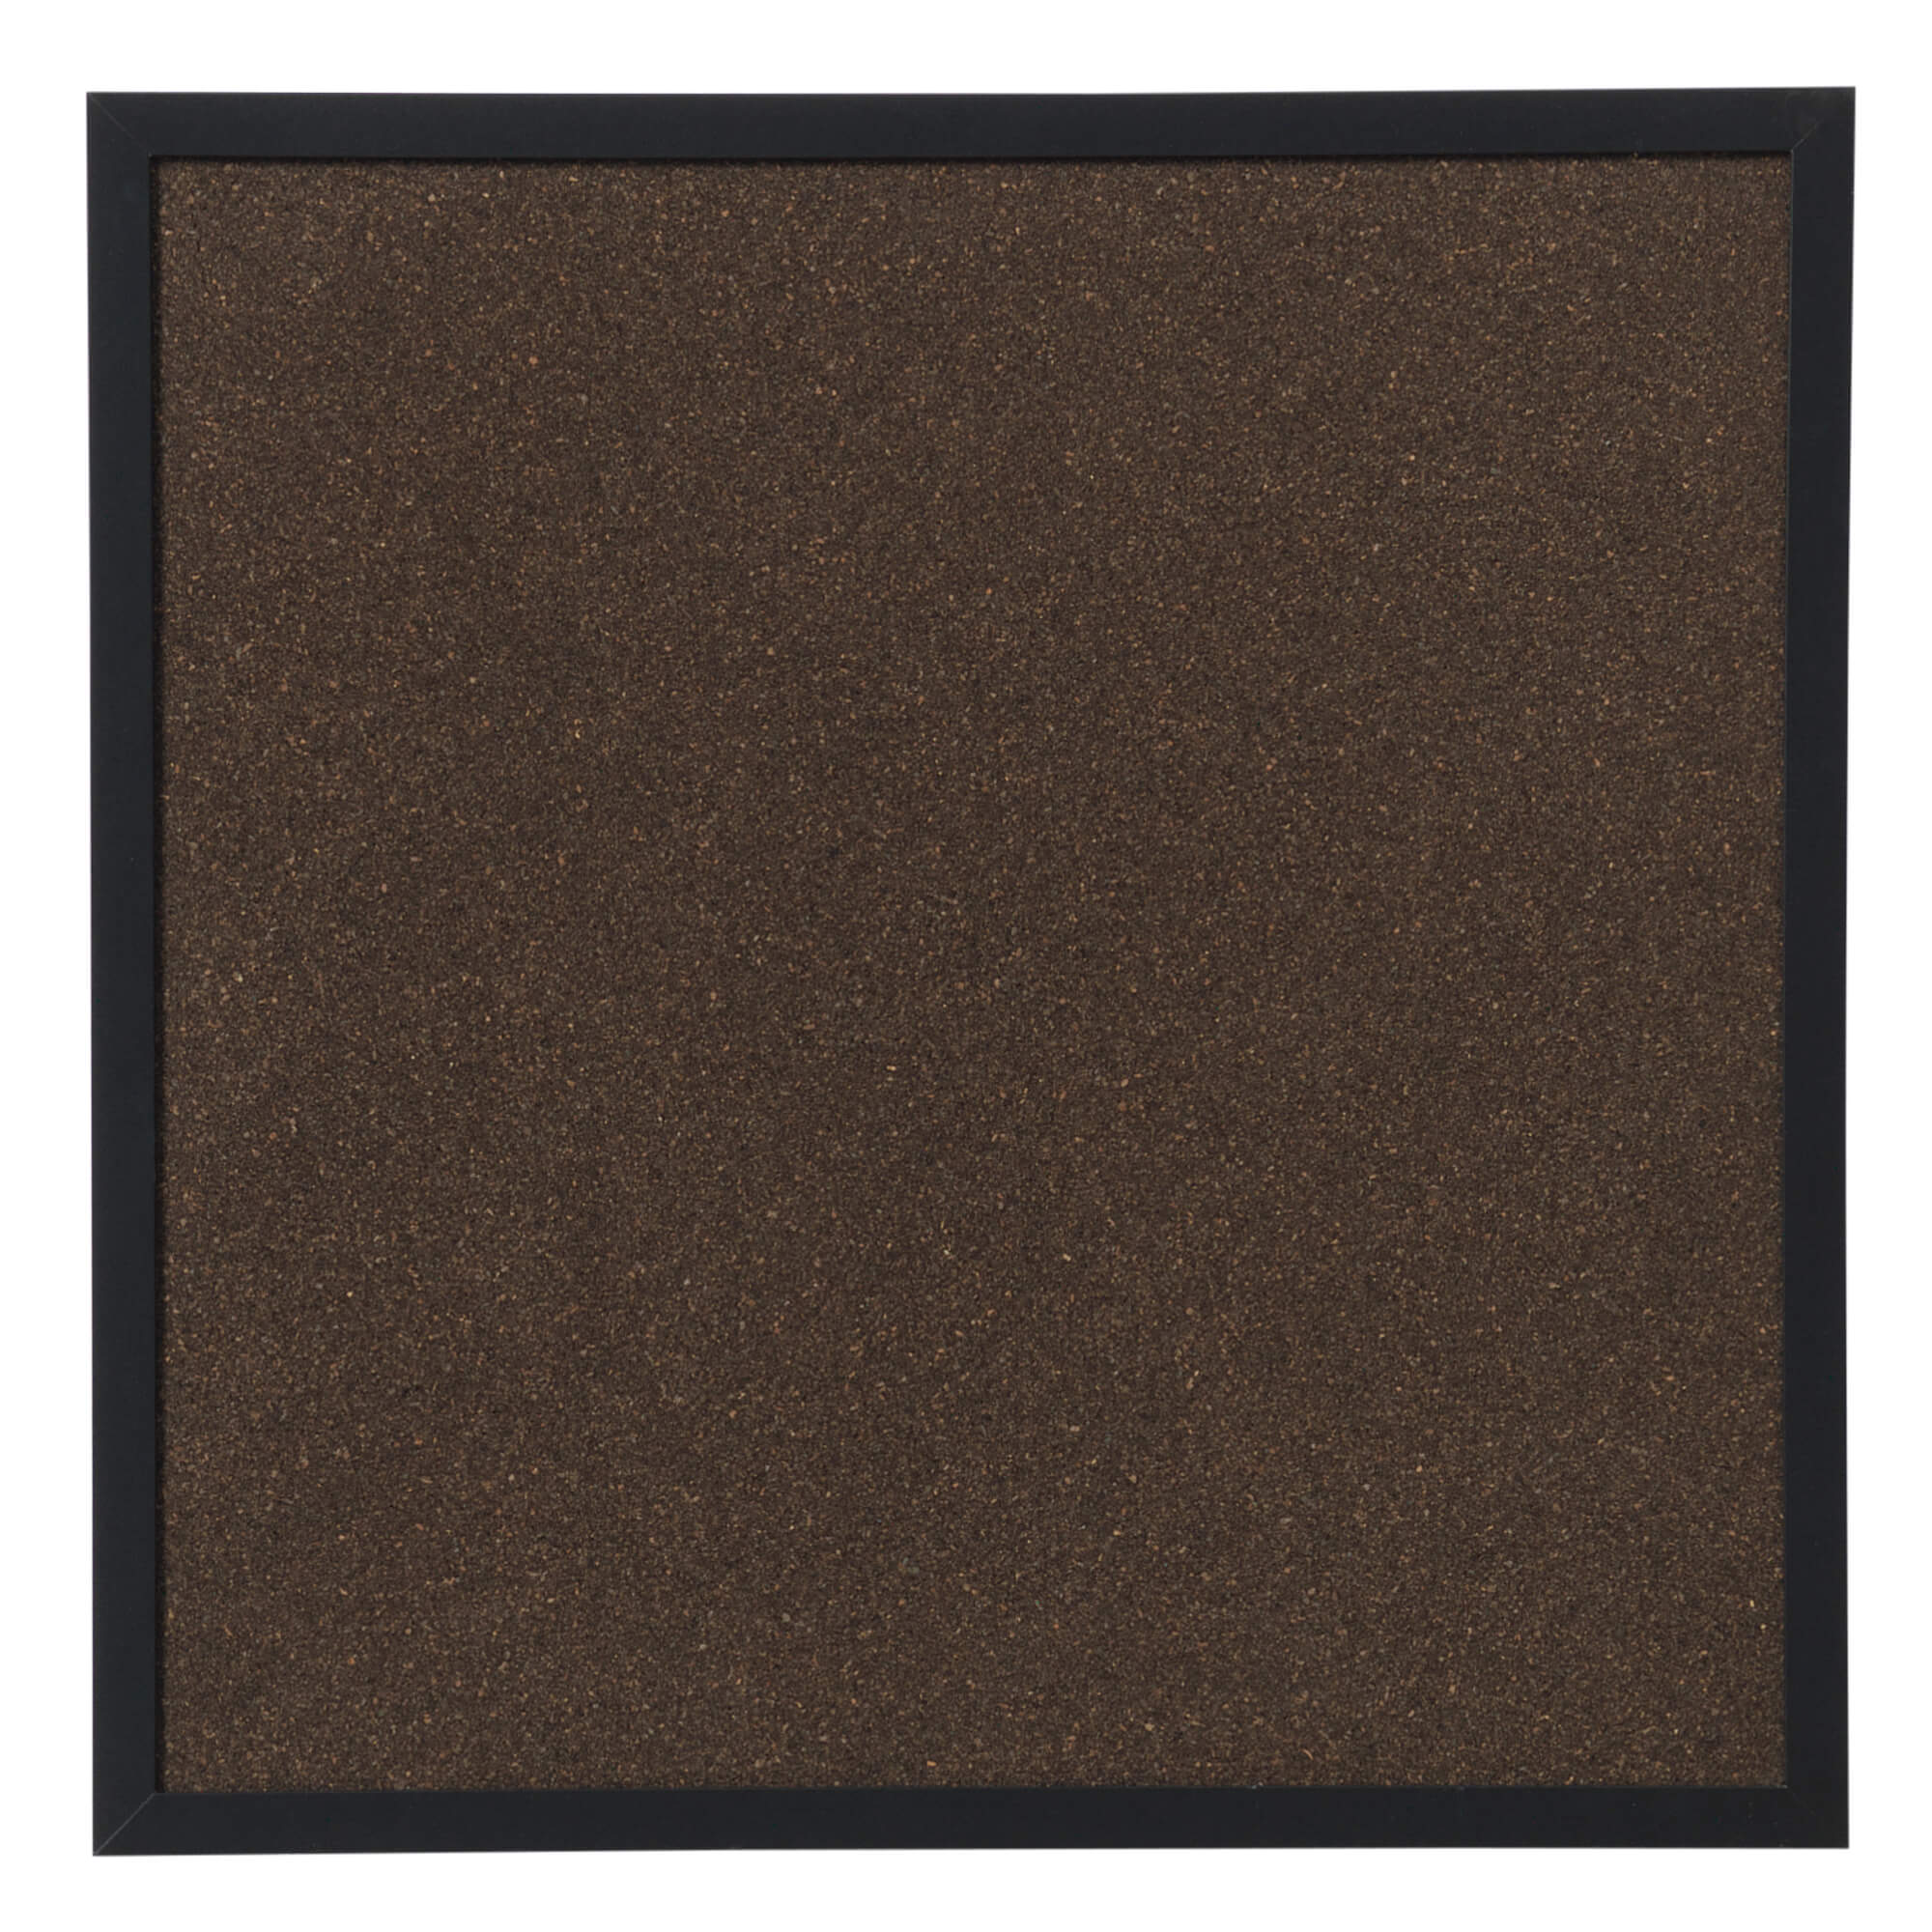 Billede af 60 x 60 cm. Mørk Kork opslagstavle med sort ramme